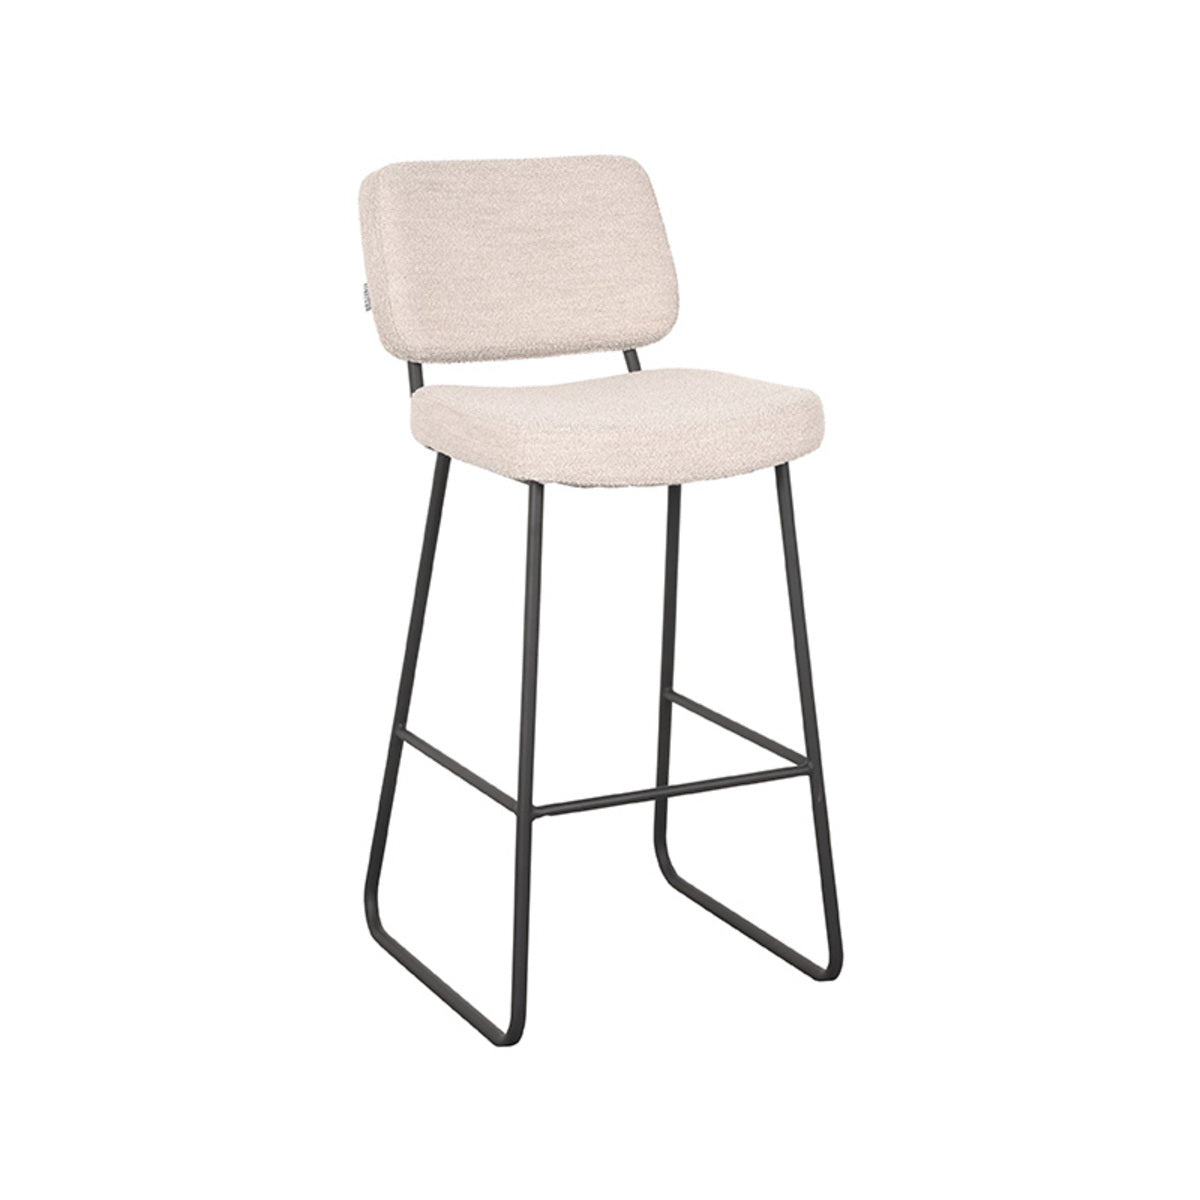 LABEL51 Bar stool Noah - Natural - Boucle - Seat height 78 |